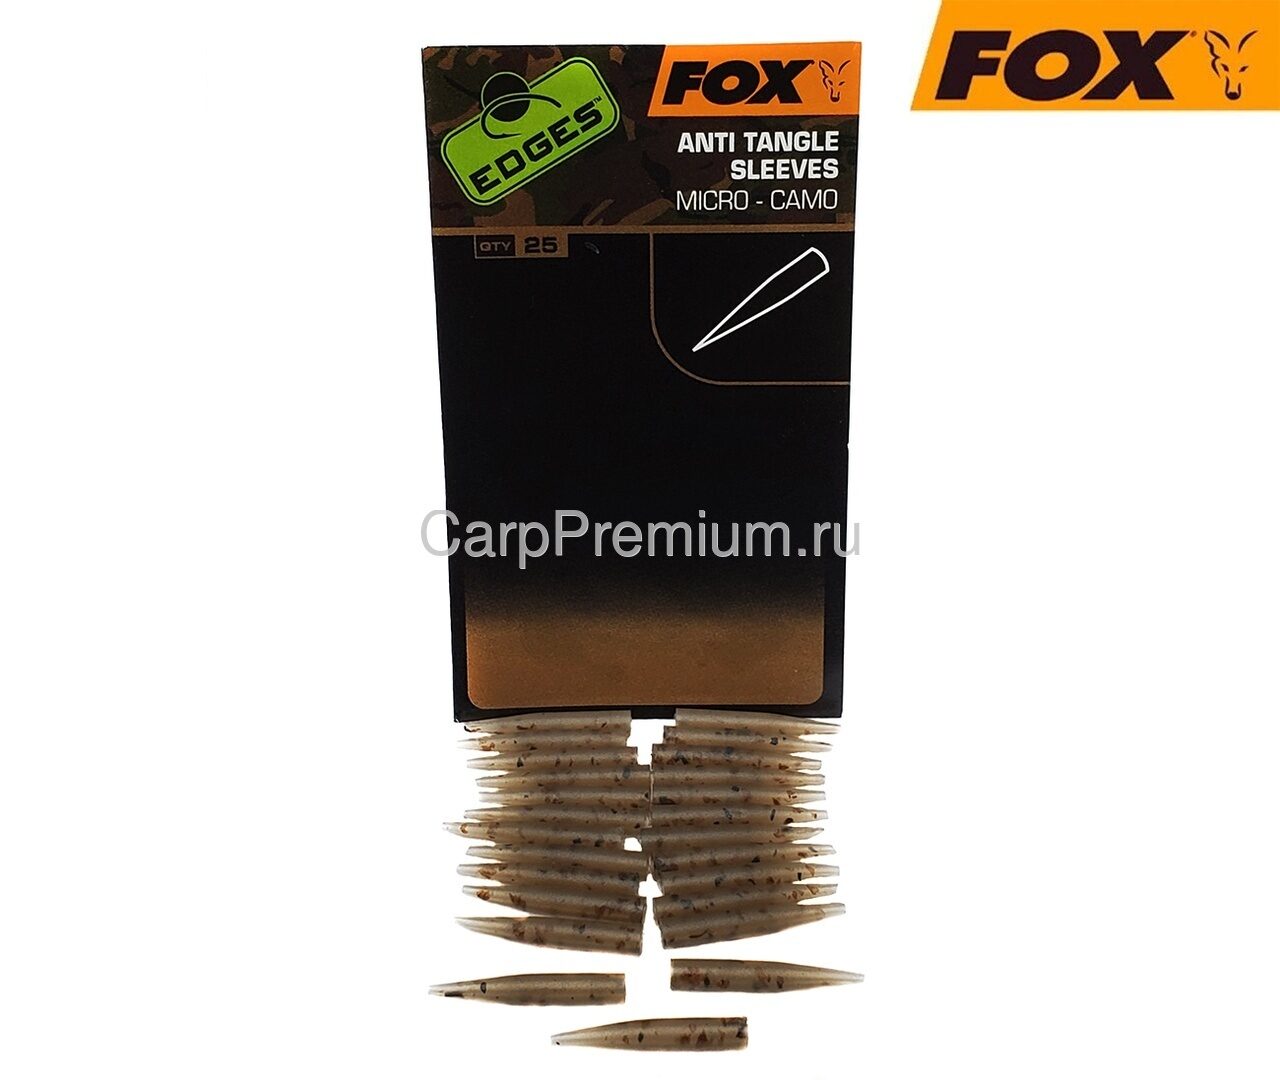 Отводчики для поводка Малые Камуфляжные Fox (Фокс) - Edges Camo Micro Anti Tangle Sleeves, 25 шт